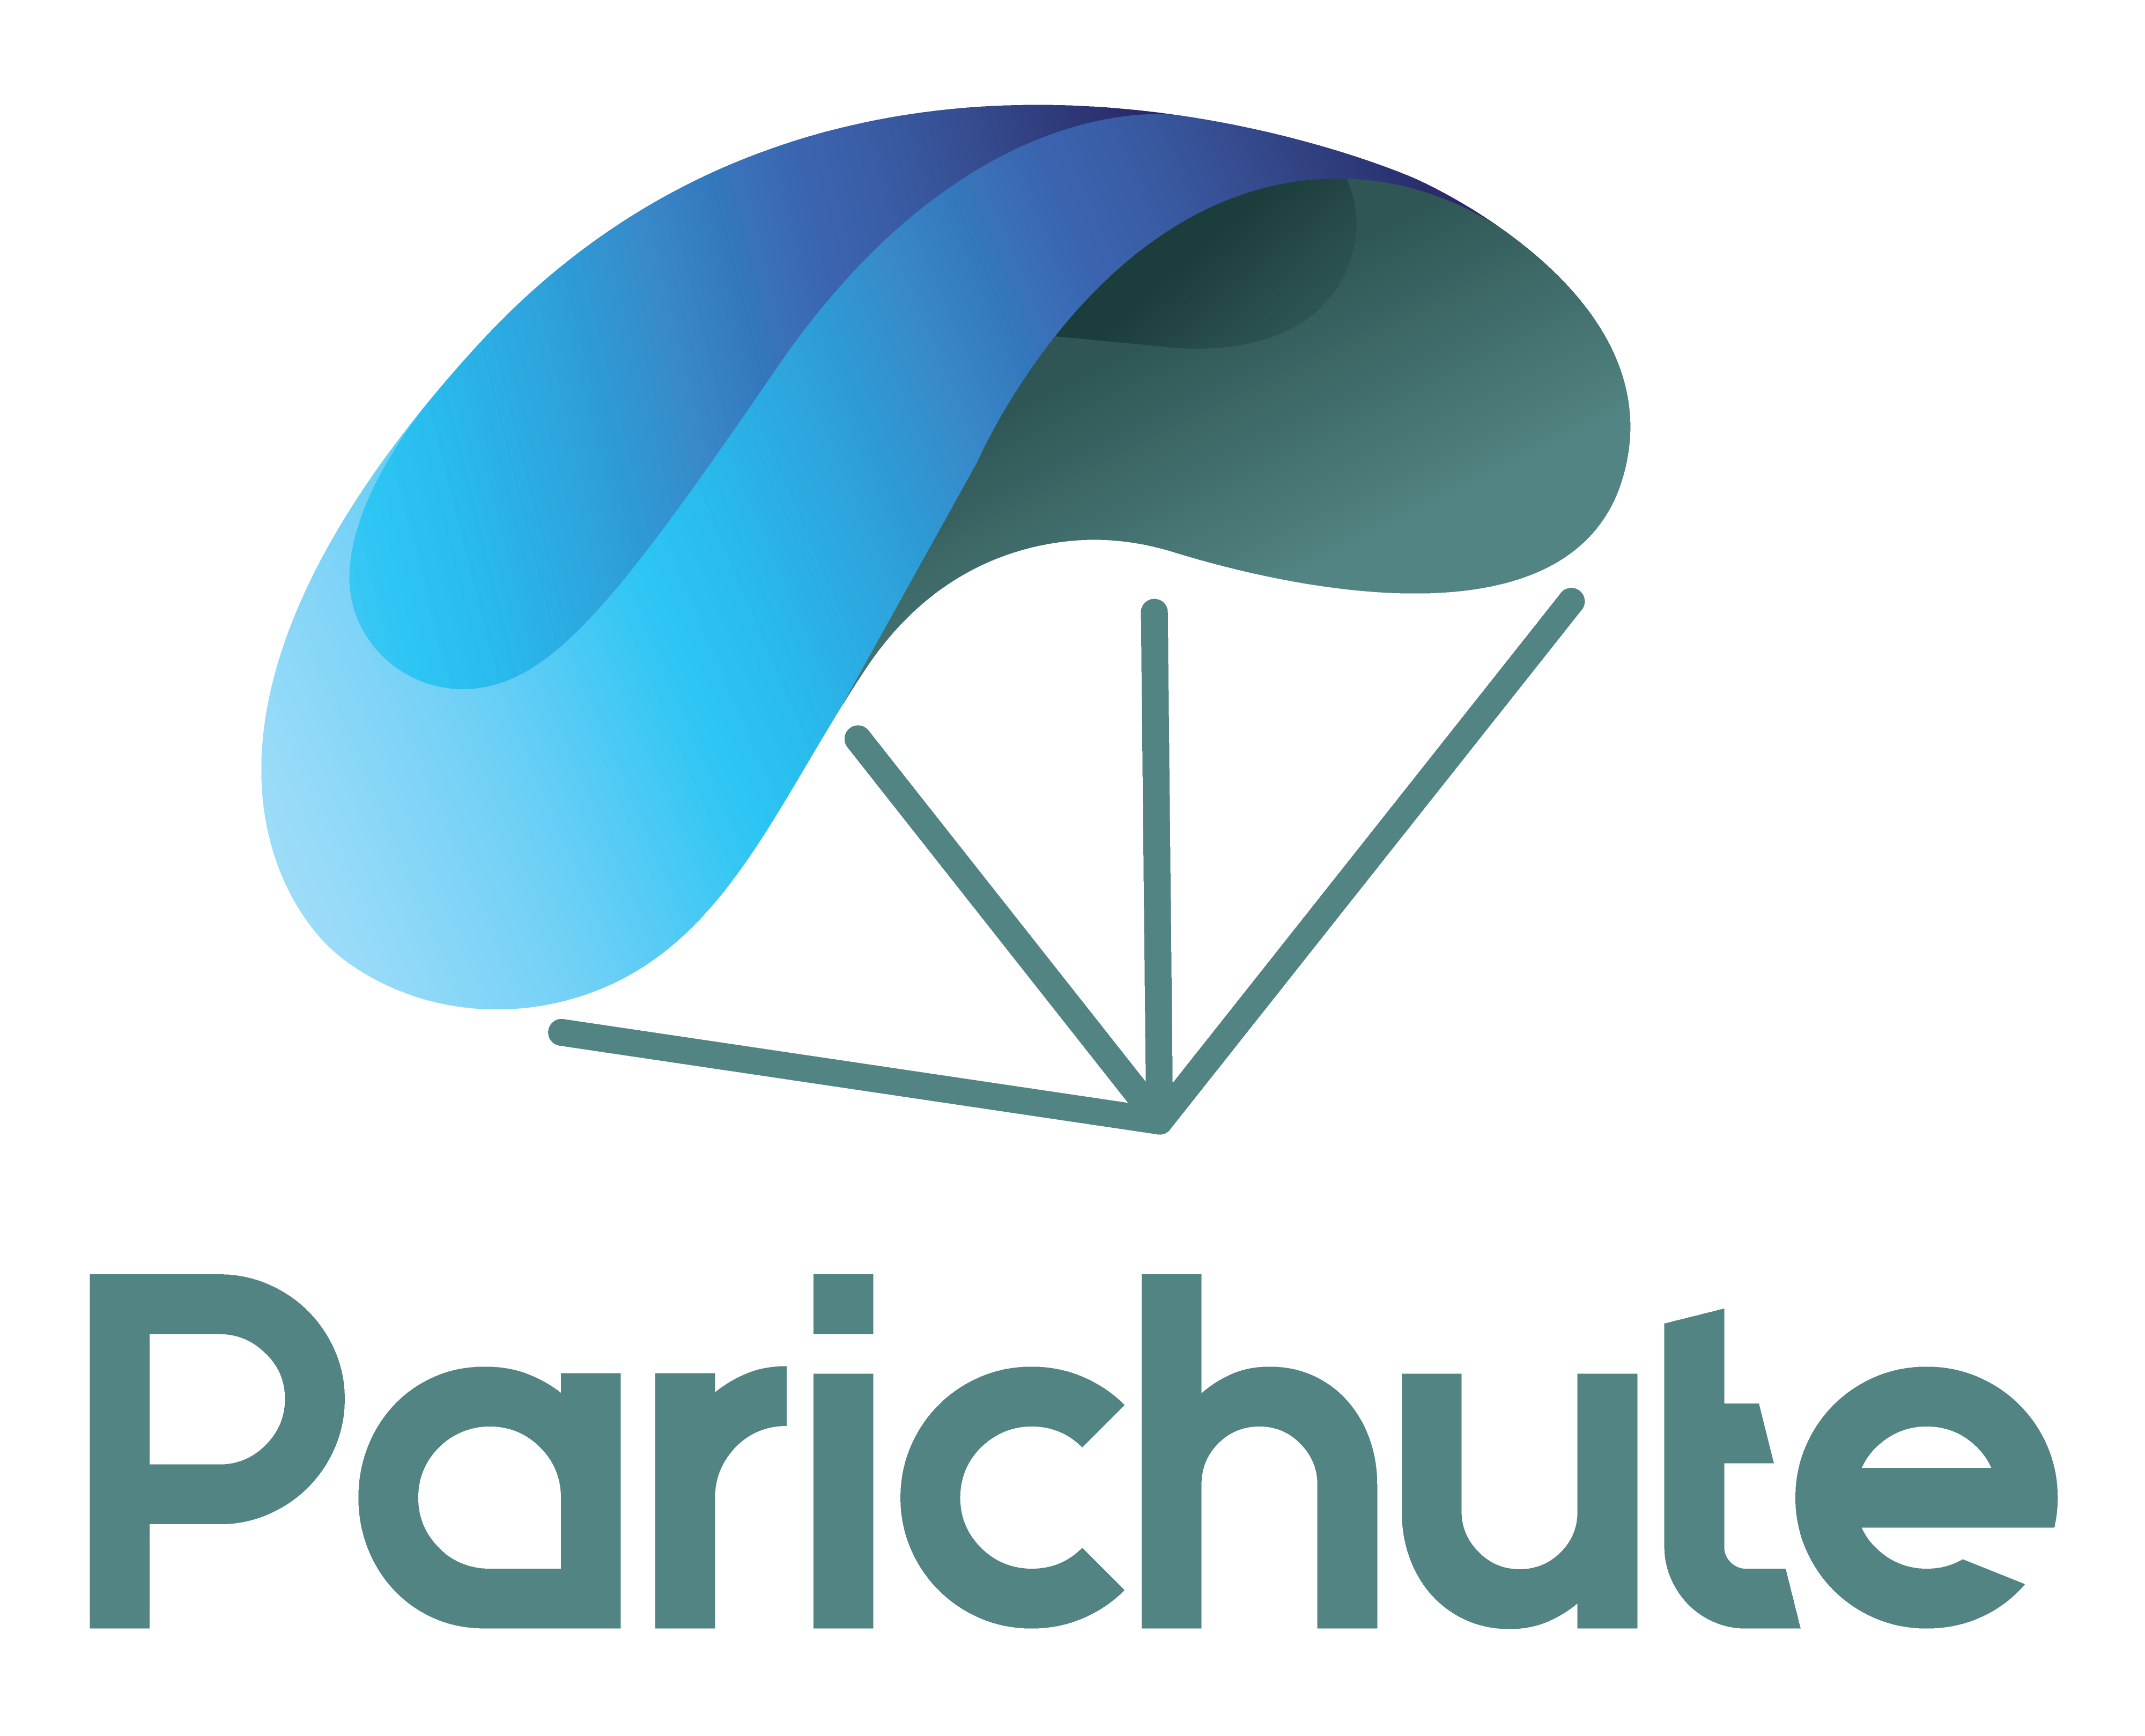 Parichute